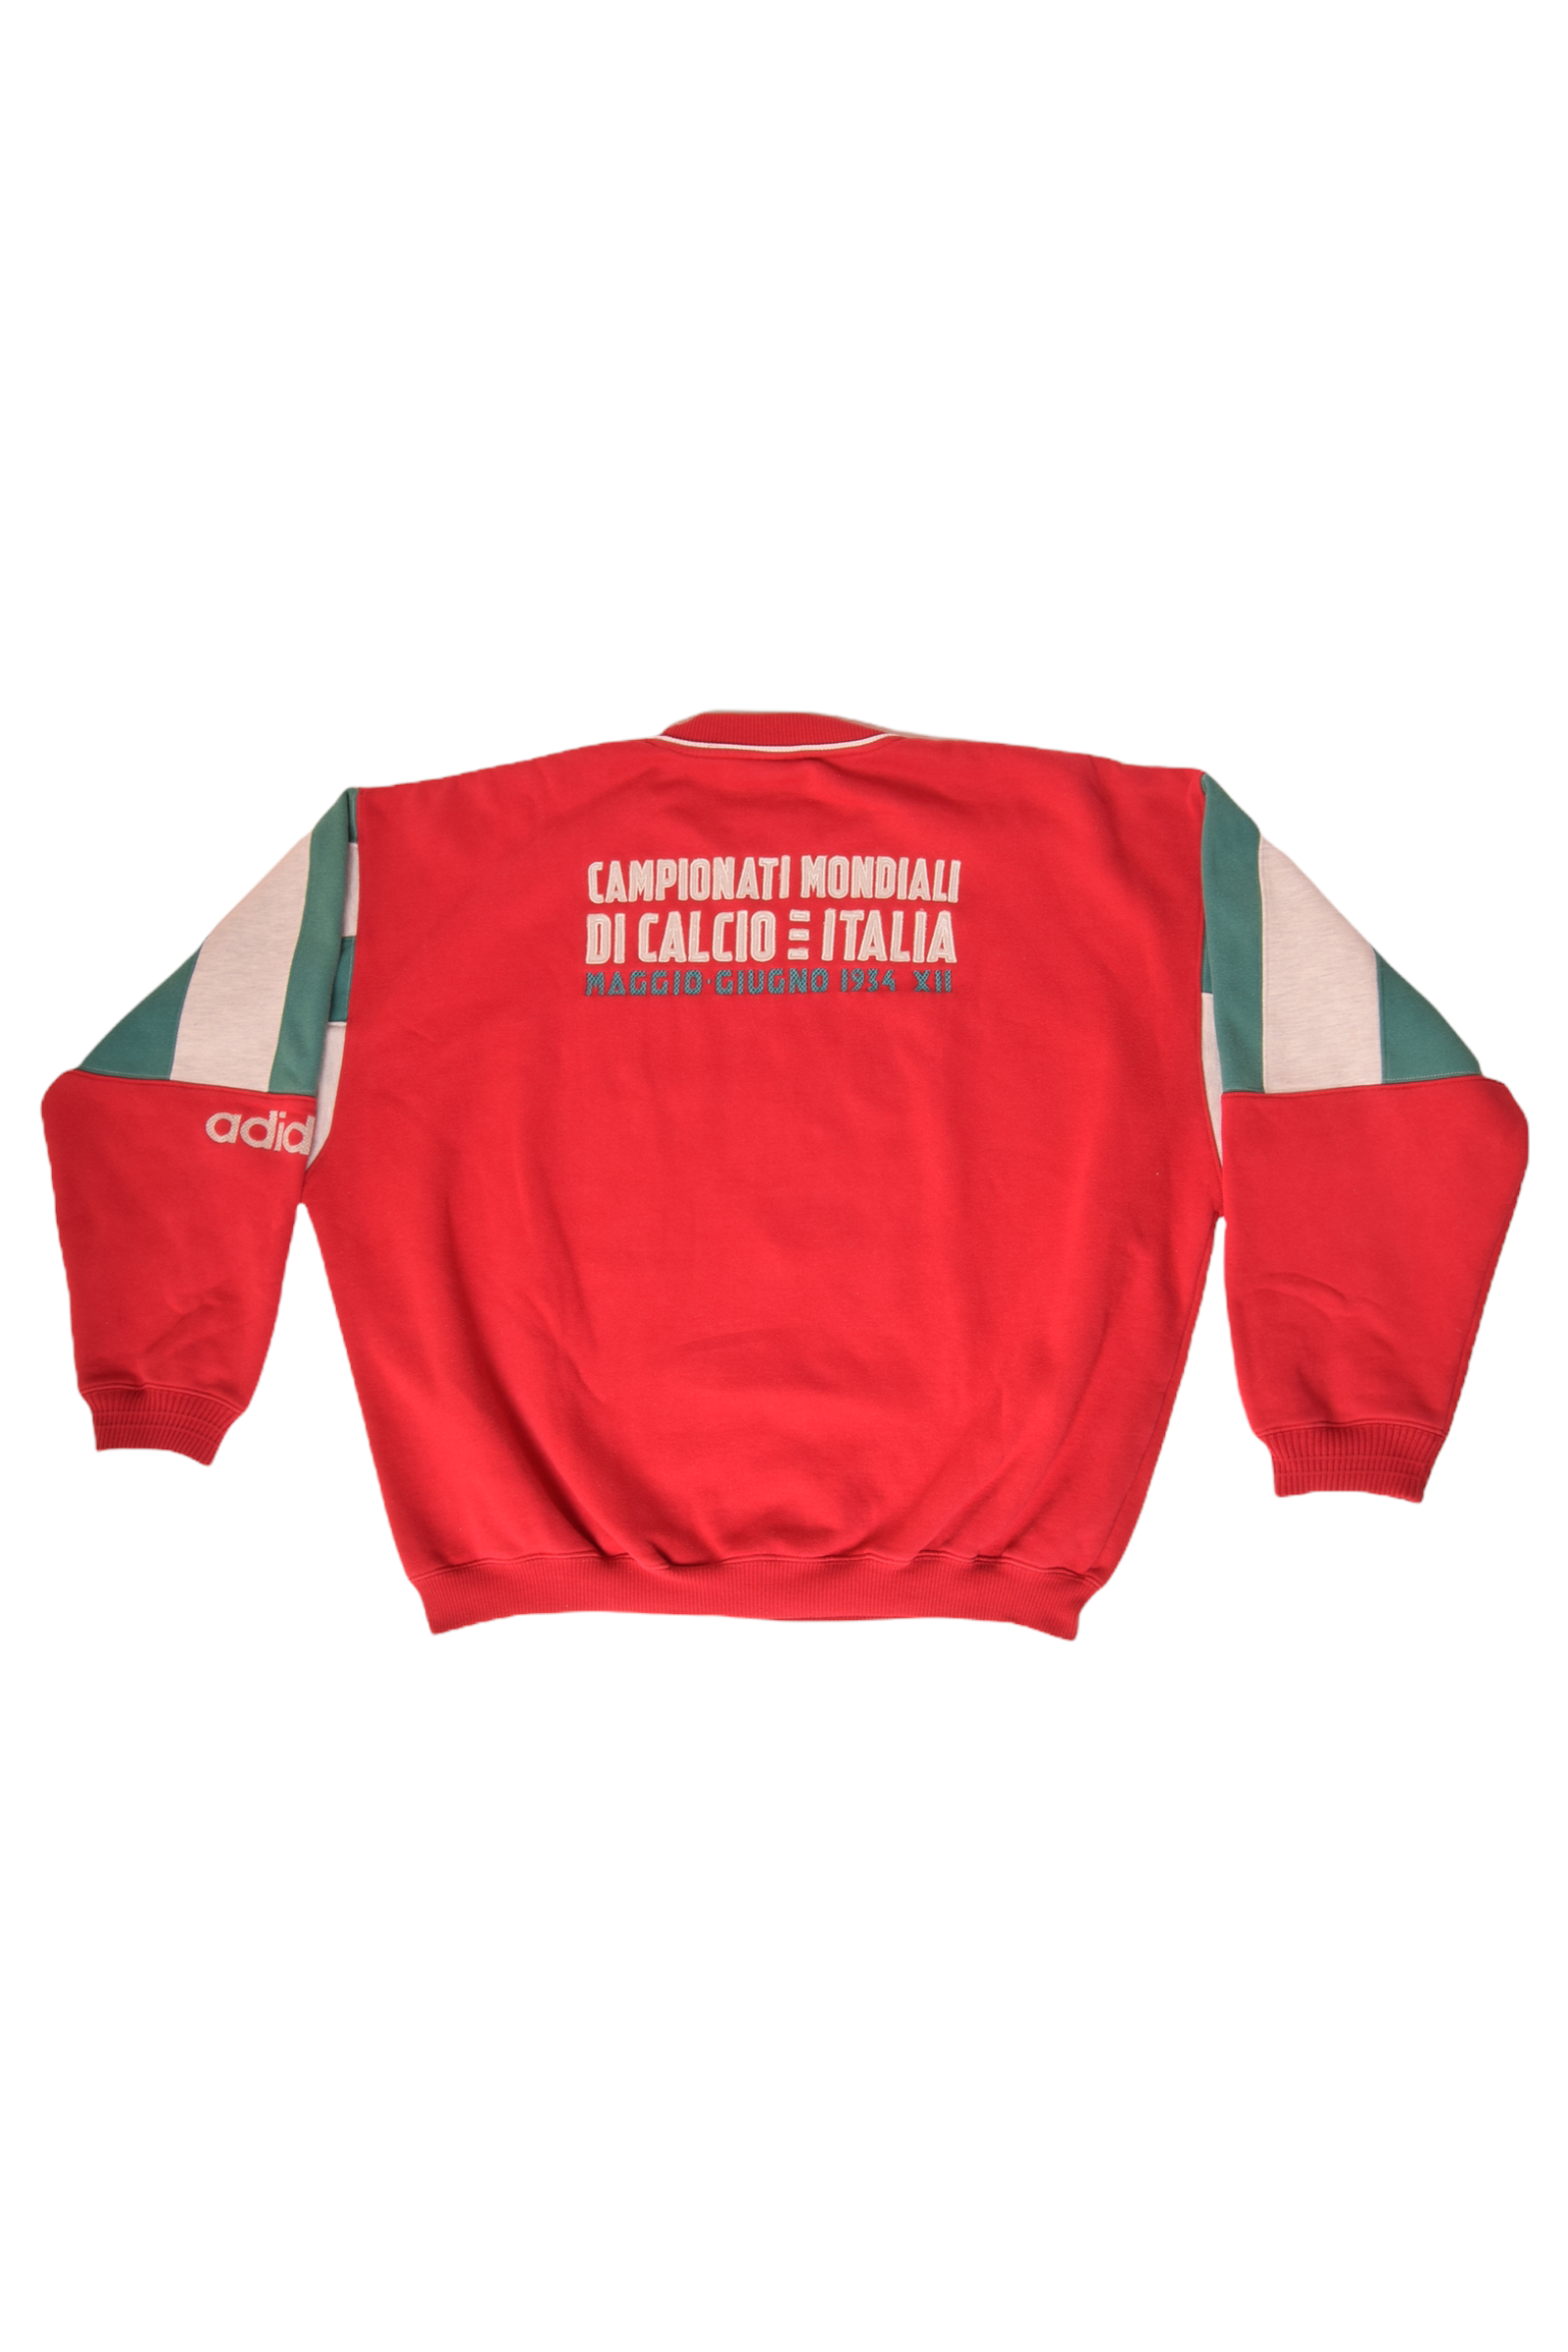 Vintage 80's - 90's Adidas Sweatshirt Crew Neck Italia Campionato Mondiale Di Calcio 27 Magio 10 Giugno 1934 Heavy Cotton Red Size L-XL